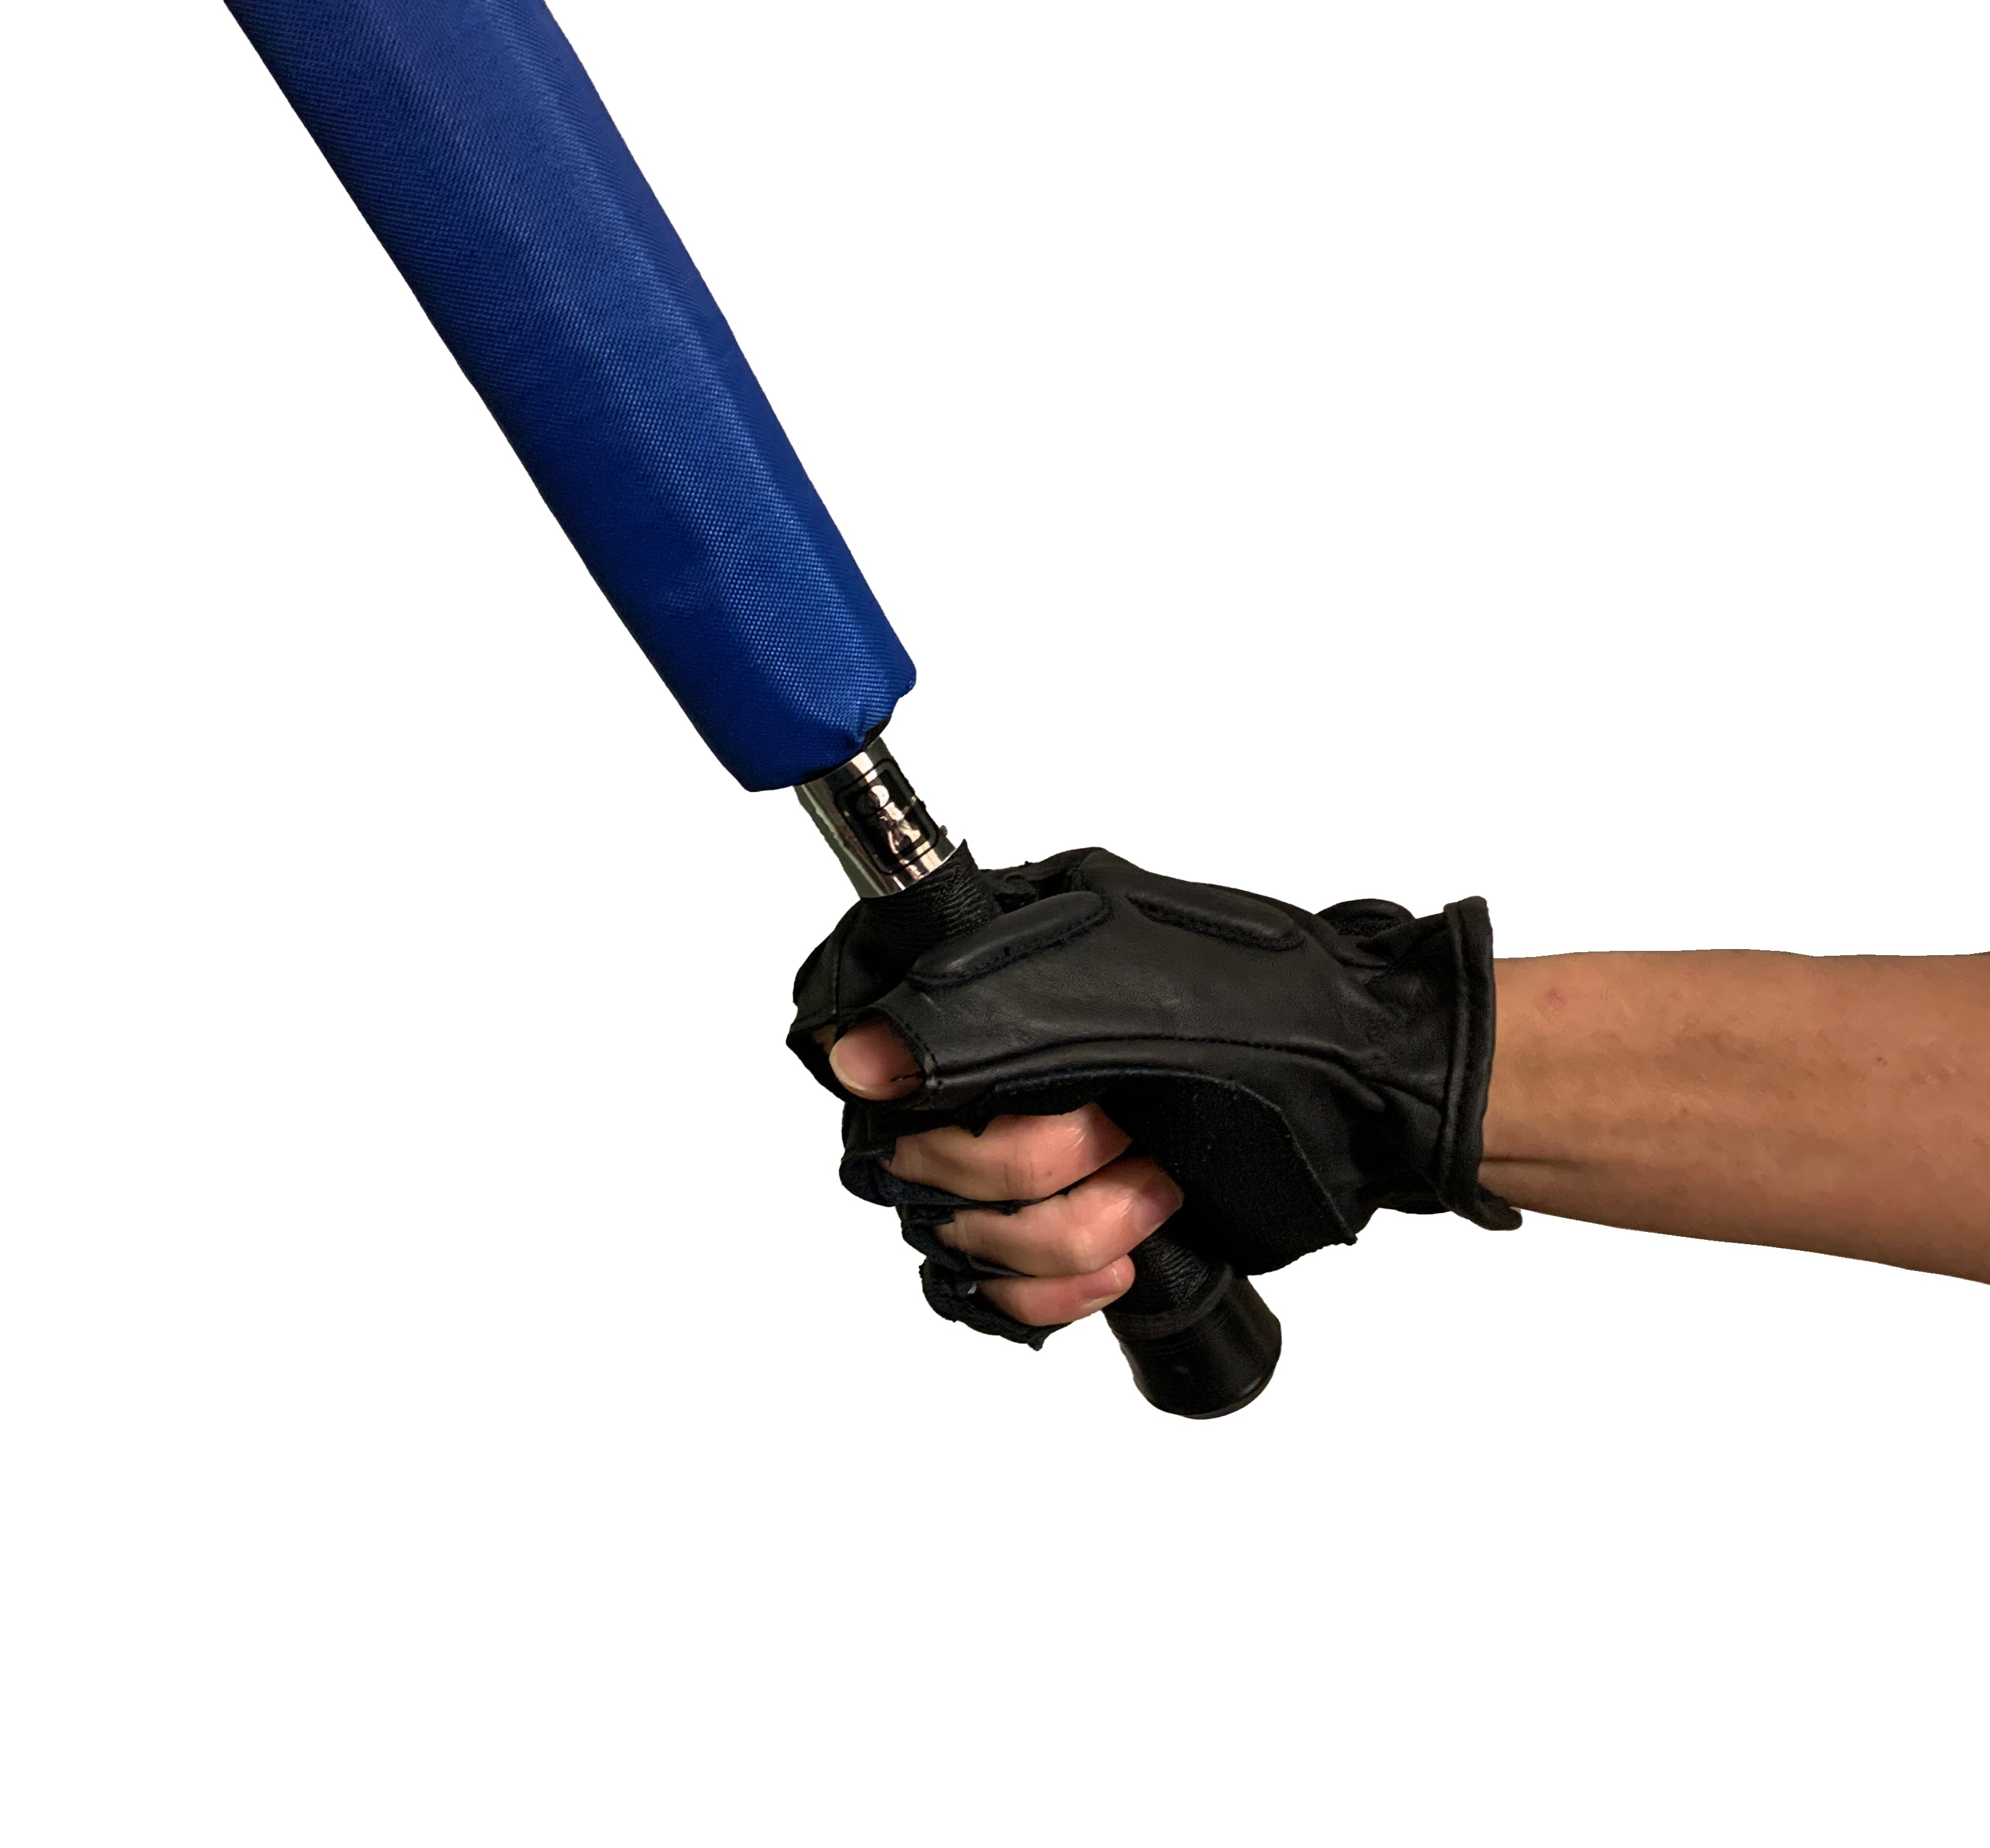 Escrima Kali Arnis Padded Stick Sparring Half Finger Leather Gloves